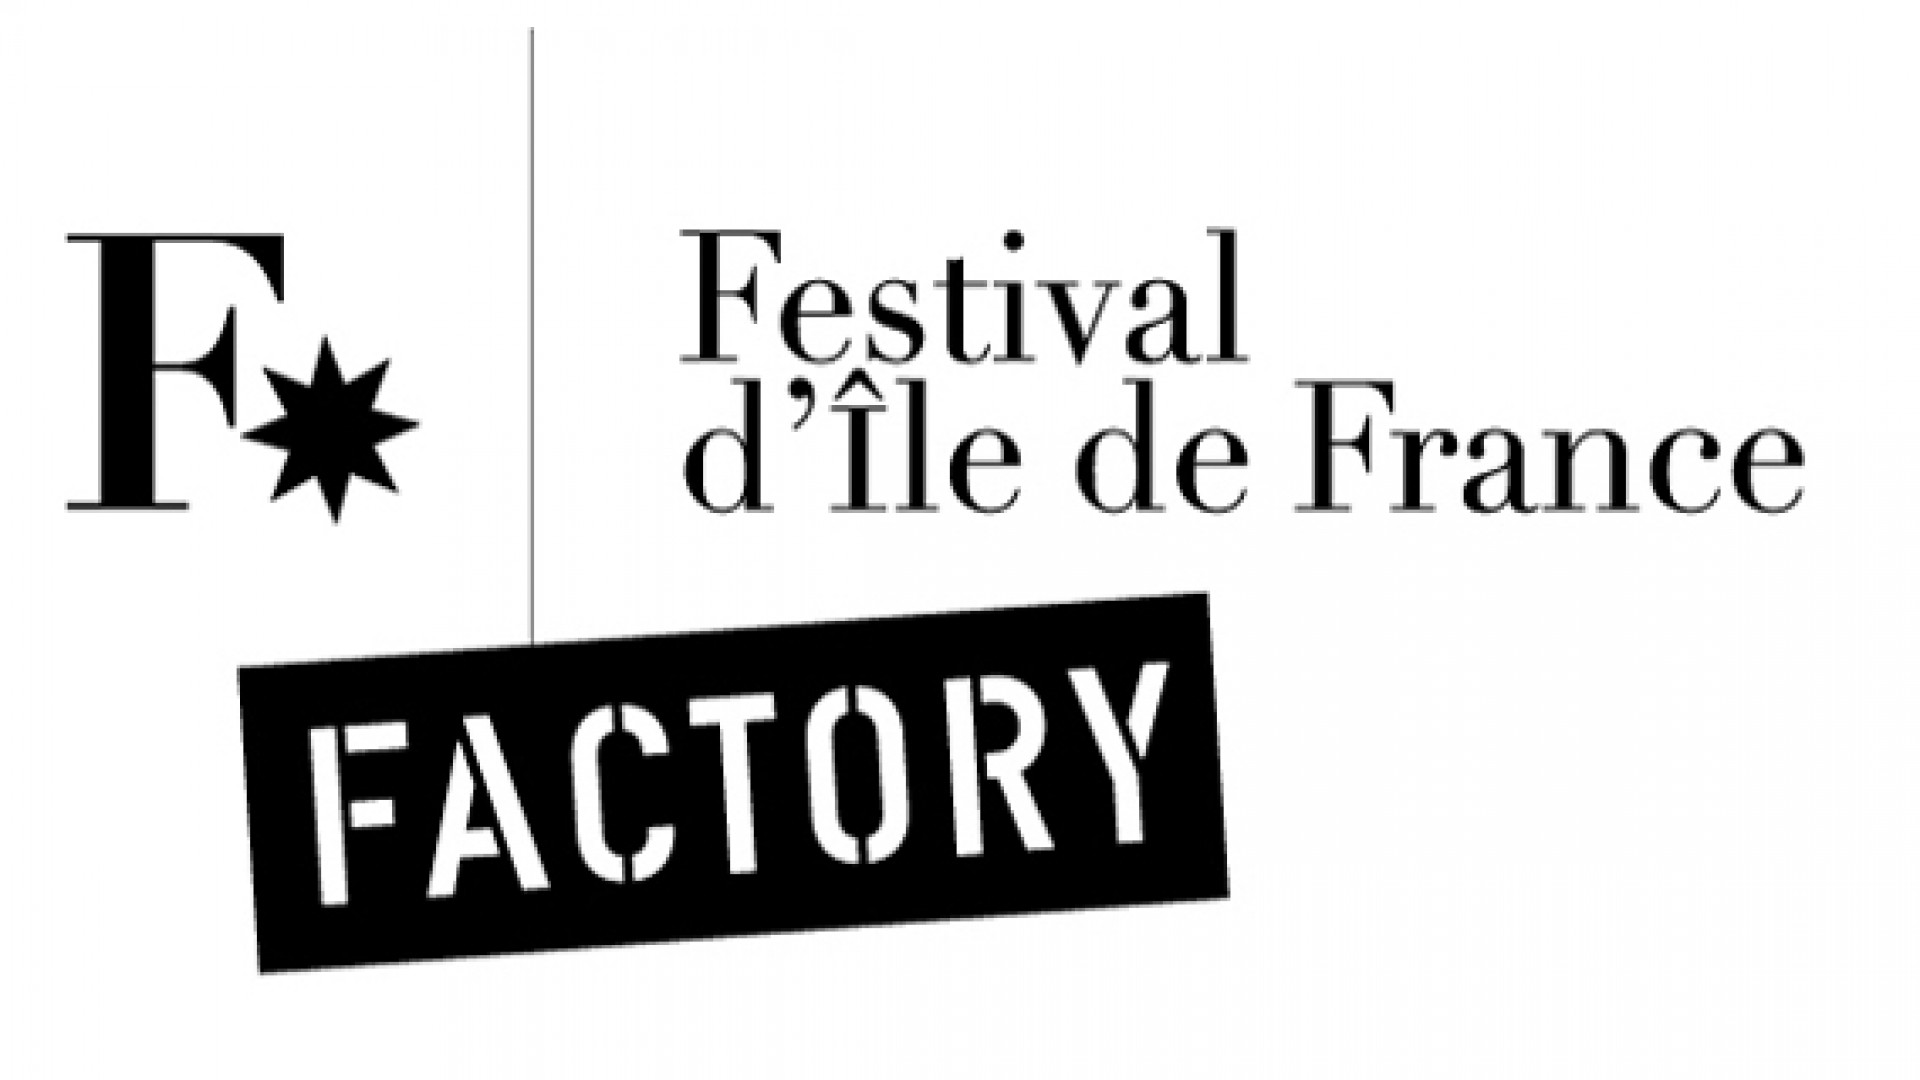 Festival d'Ile de France - Factory 2012